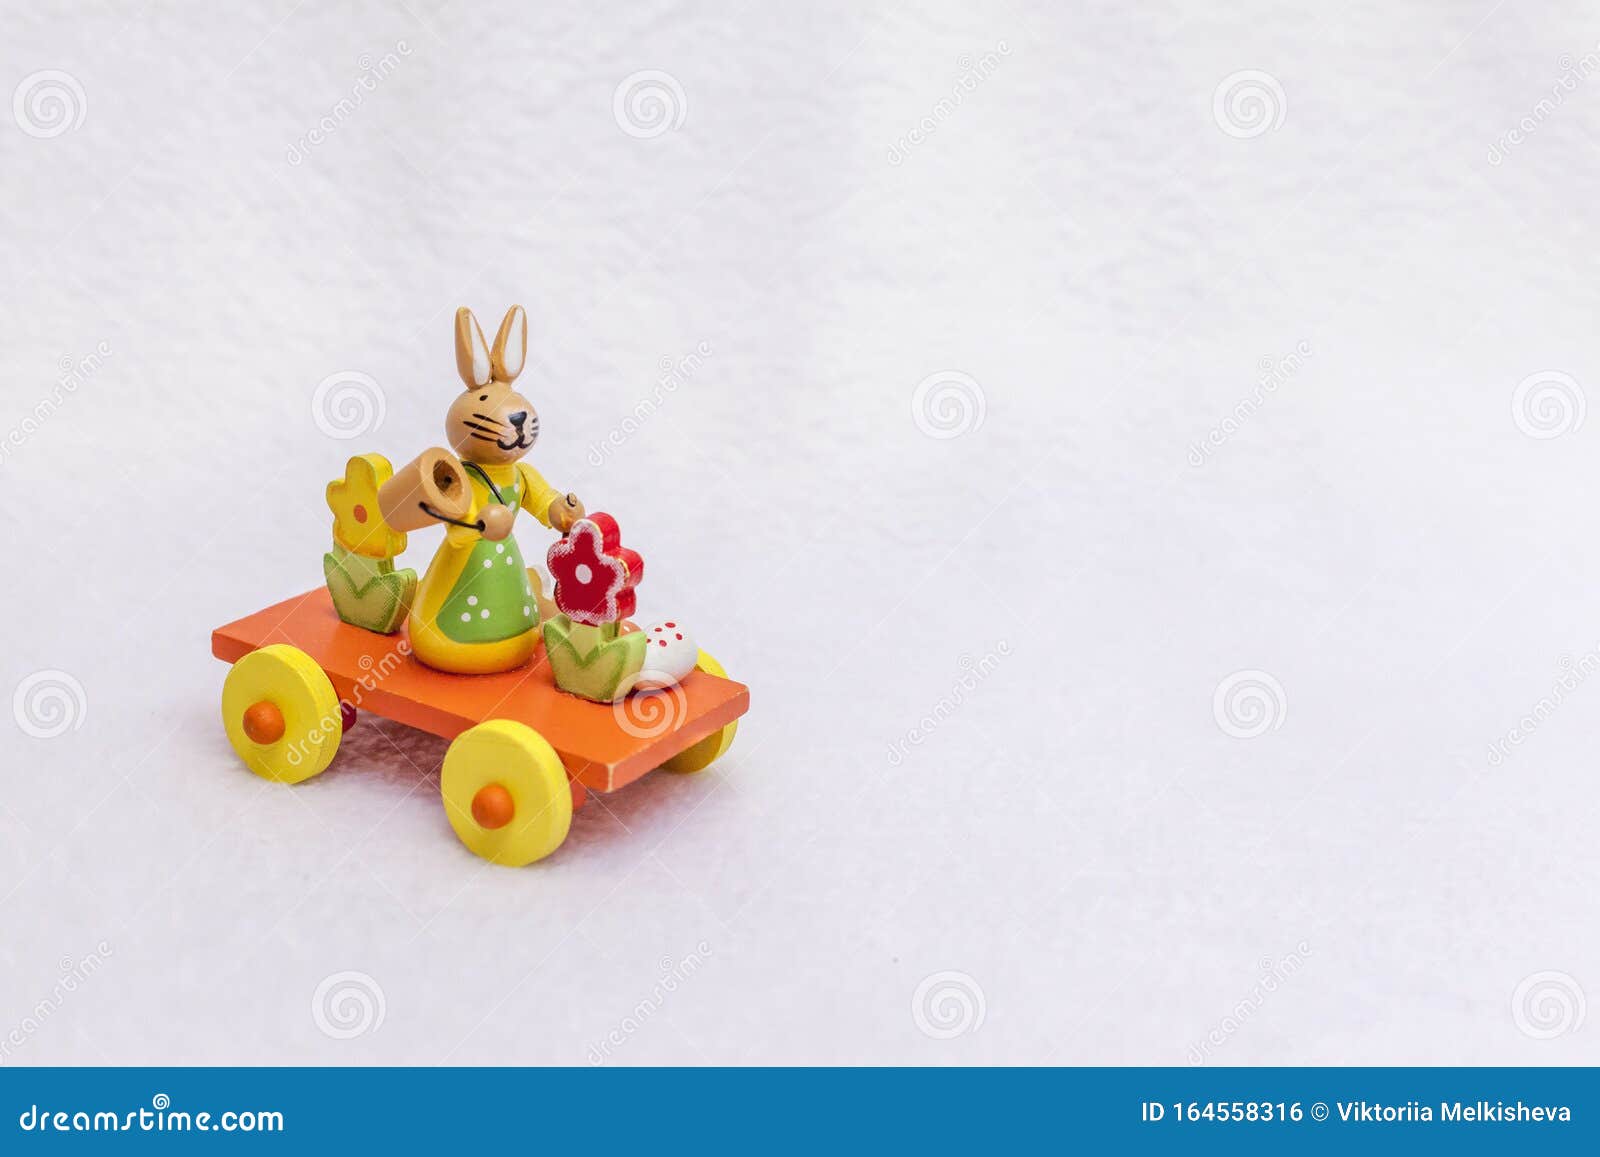 Λαγουδάκι του Πάσχα στο τρένο με ένα αυγό, έναν κουβά και λουλούδια της άνοιξης - ένα ξύλινο παιχνίδι μεταφοράς, ένα φωτεινό πορτ. Λαγουδάκι του Πάσχα στο τρένο με αυγό, κουβά και ελατήρια - ένα ξύλινο παιχνίδι μεταφοράς, ένα φωτεινό πορτοκαλί, κίτρινο, κόκκινο και πράσινο, μια πλατφόρμα με τροχούς από το ρυμουλκούμενο Χαριτωμένη φωτογραφία με χώρο αντιγραφής